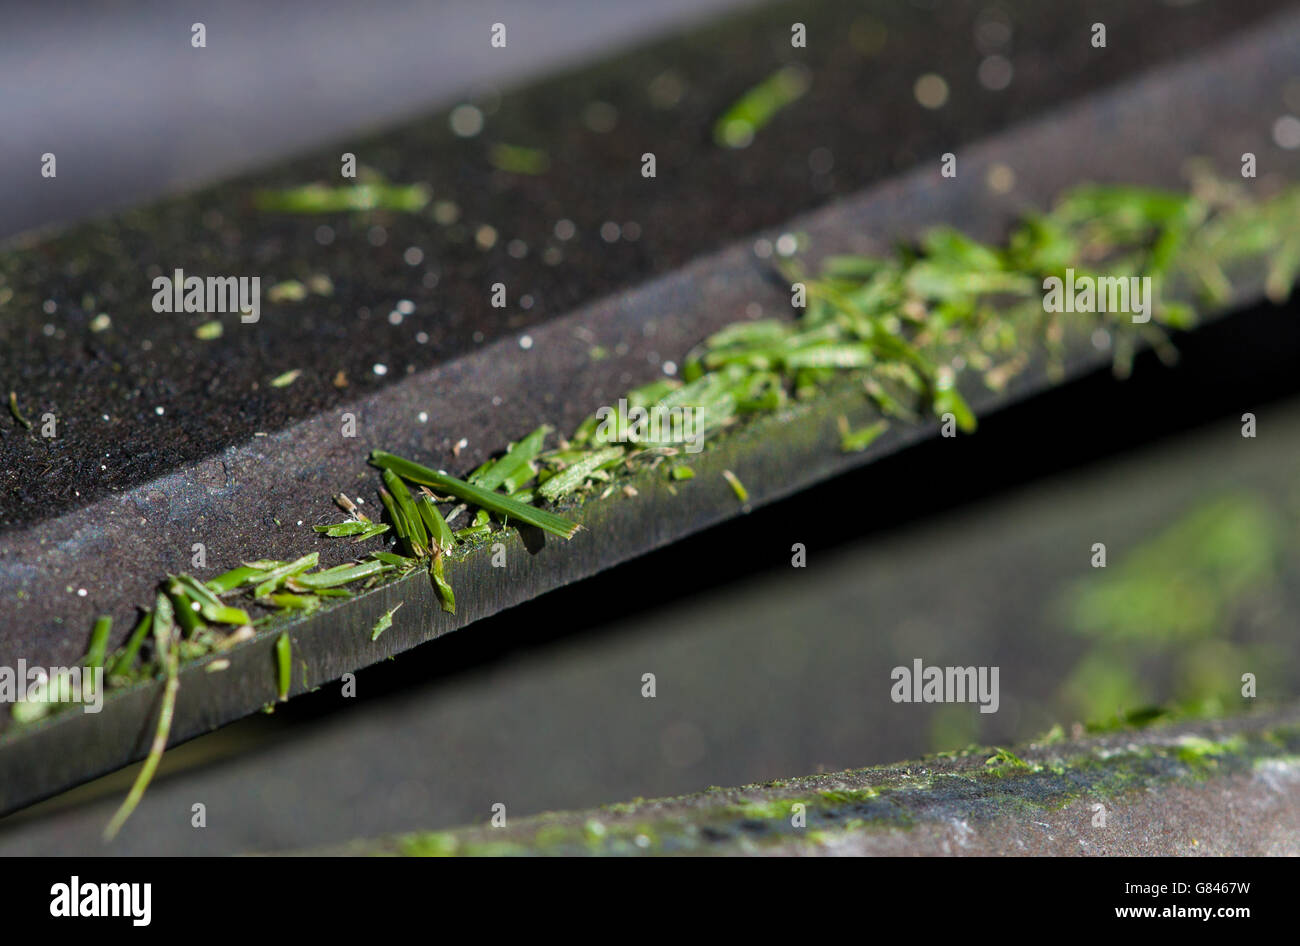 Nahaufnahme Makroobjektiv Foto zeigt Grasschnitt auf einem Rasenmäher Messer während Tag vier der Wimbledon Championships auf dem All England Lawn Tennis und Croquet Club, Wimbledon. Stockfoto